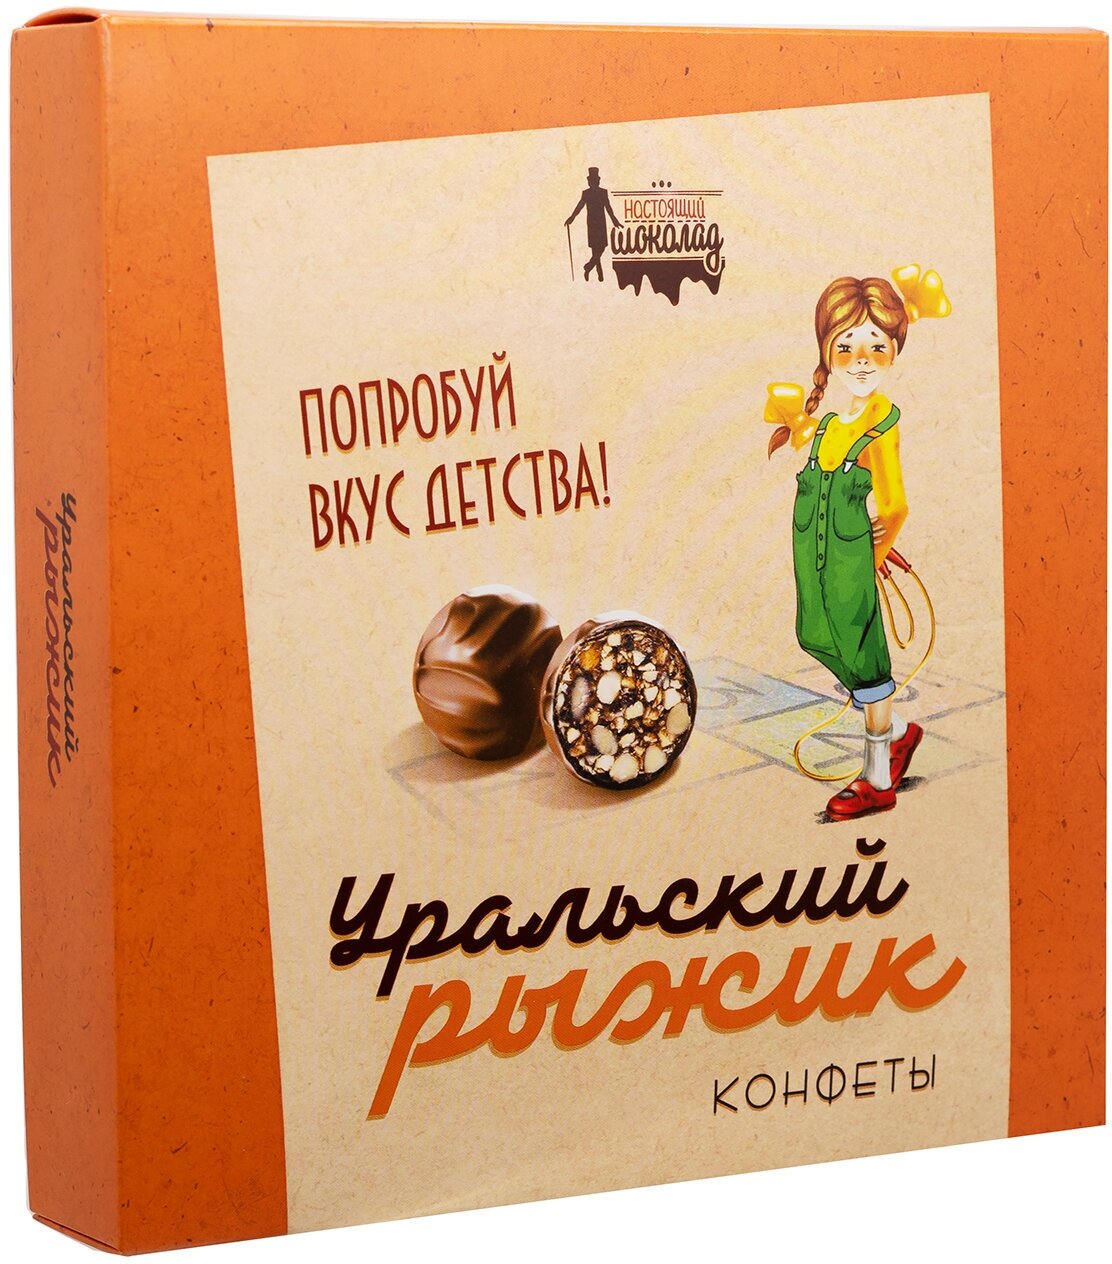 Первая шоколадная компания (Настоящий шоколад) Конфеты Уральский рыжик 200 г